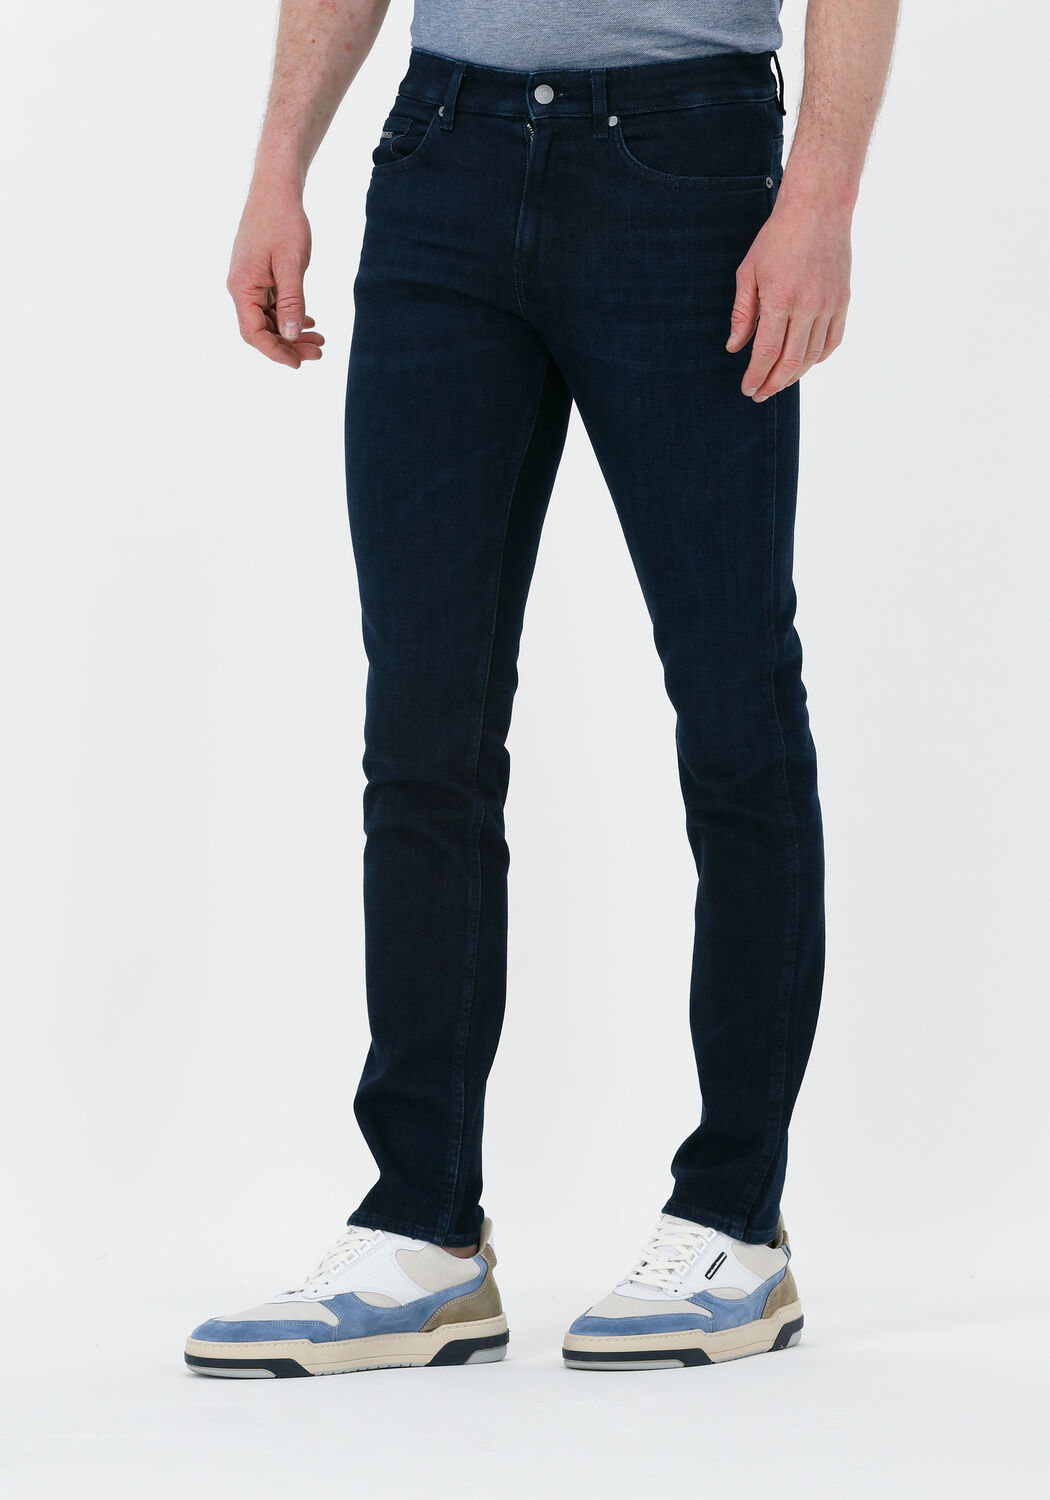 Versace Jeans Slim jeans blauw-wit dierenprint casual uitstraling Mode Spijkerbroeken Slim jeans 